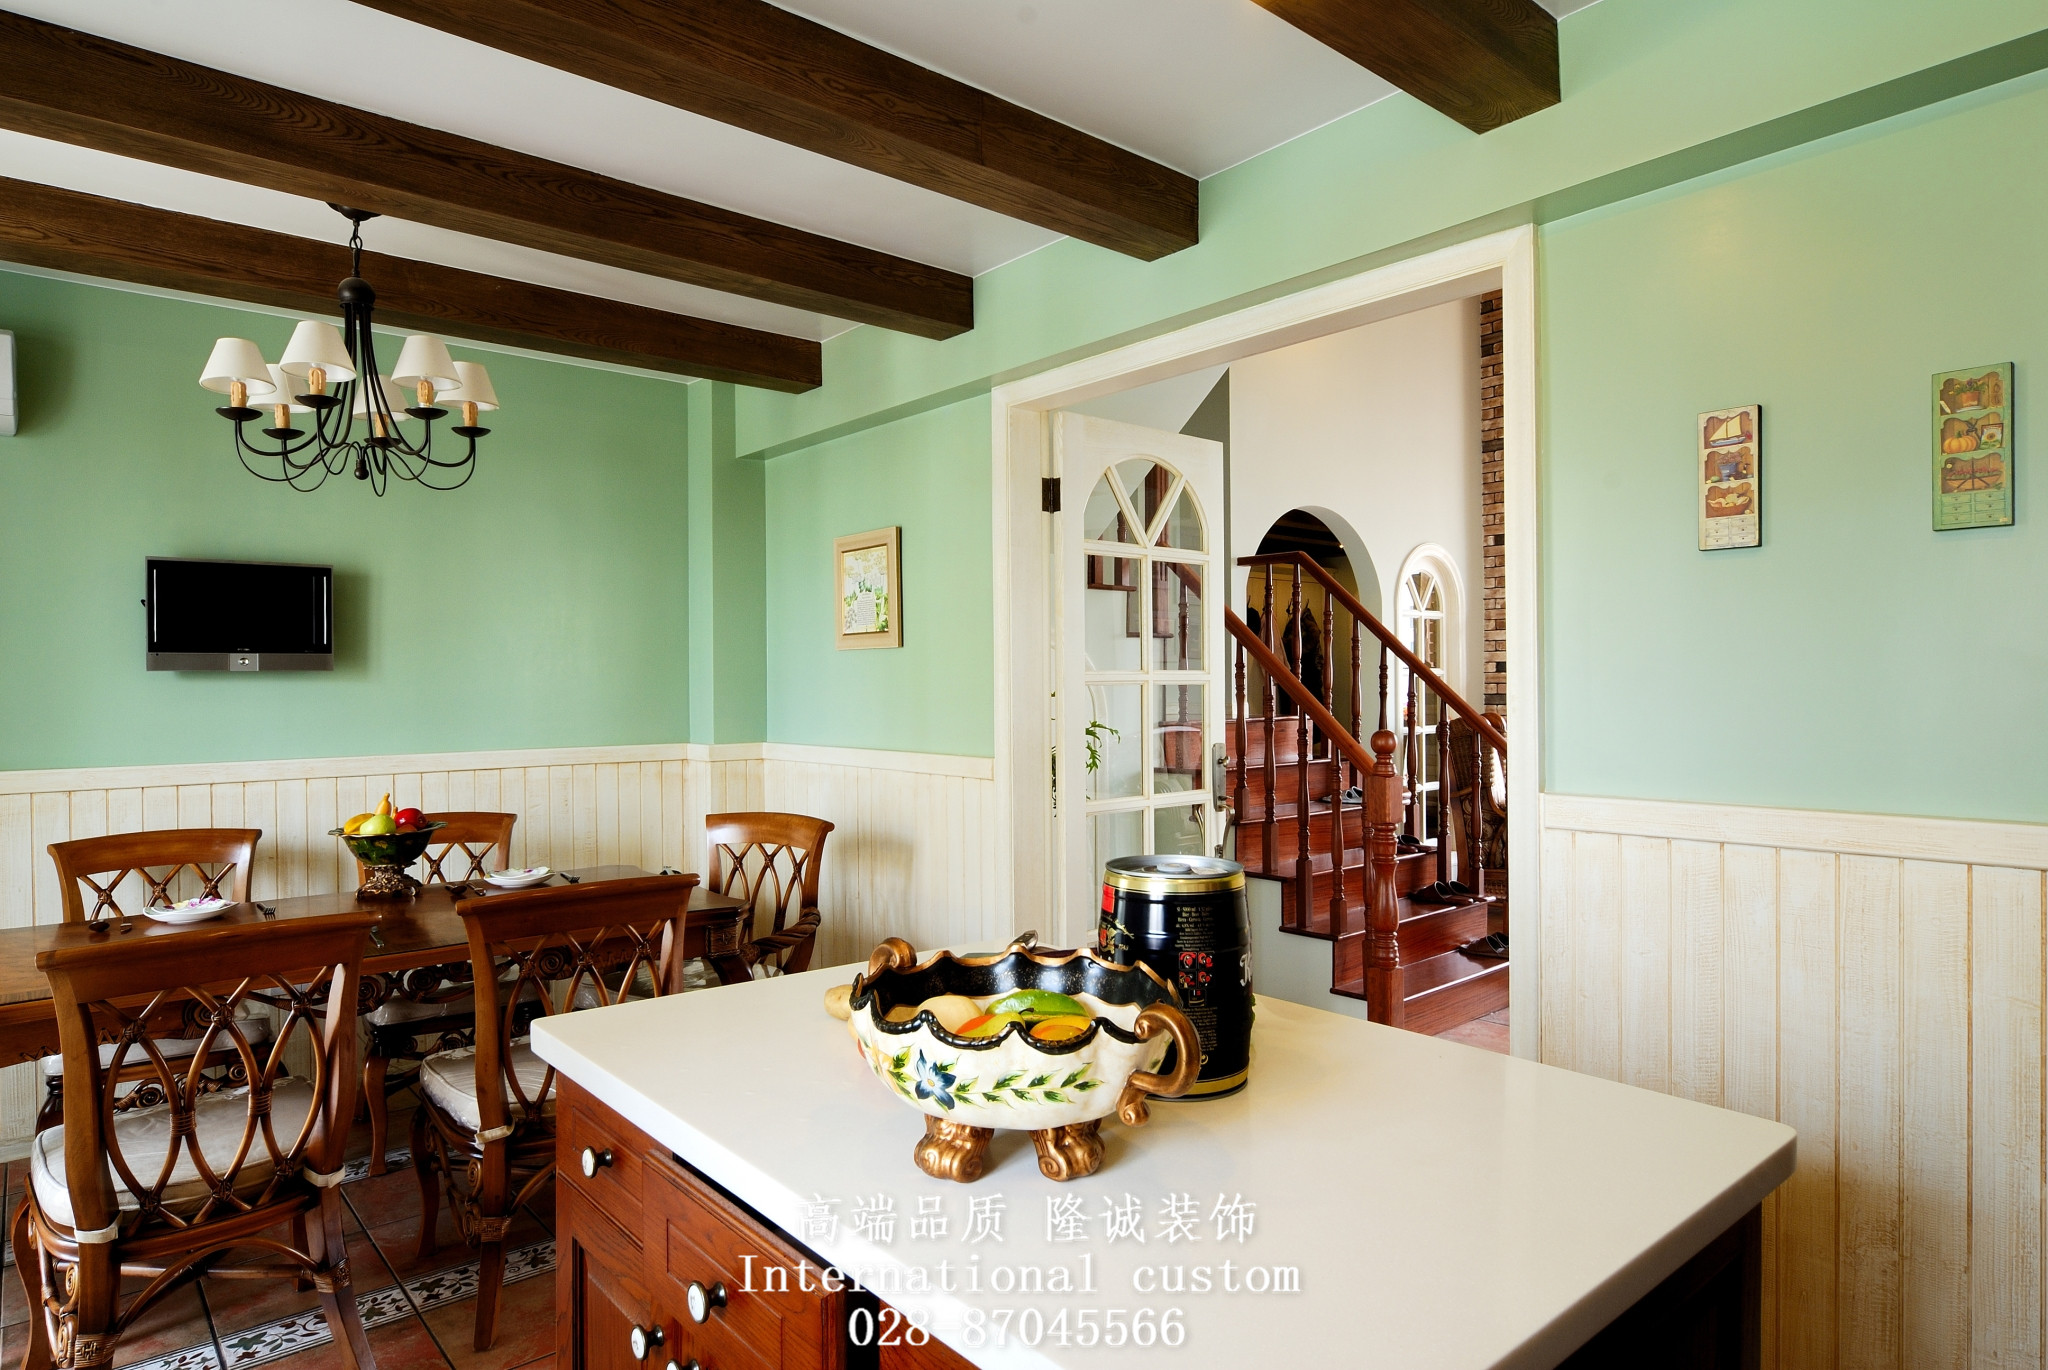 田园 英式 温馨 舒适 复式 收纳 厨房图片来自fy1831303388在西贵堂的分享